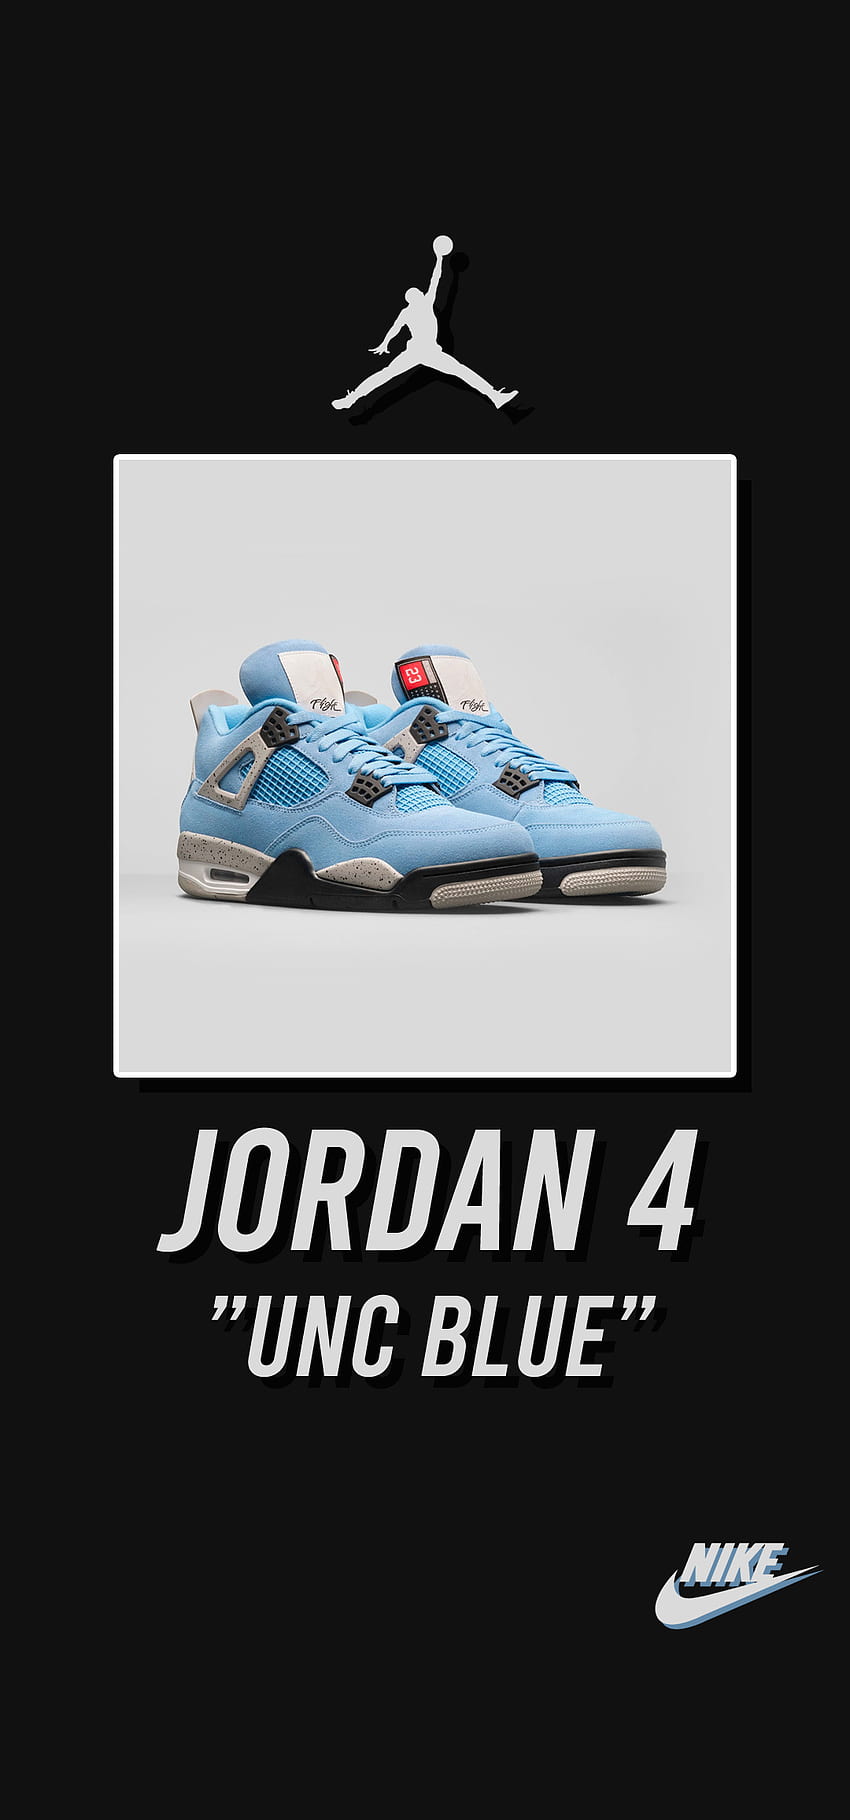 Jordan 4 - unc blue, Marka, Nike, Spor Ayakkabı, Moda HD telefon duvar kağıdı